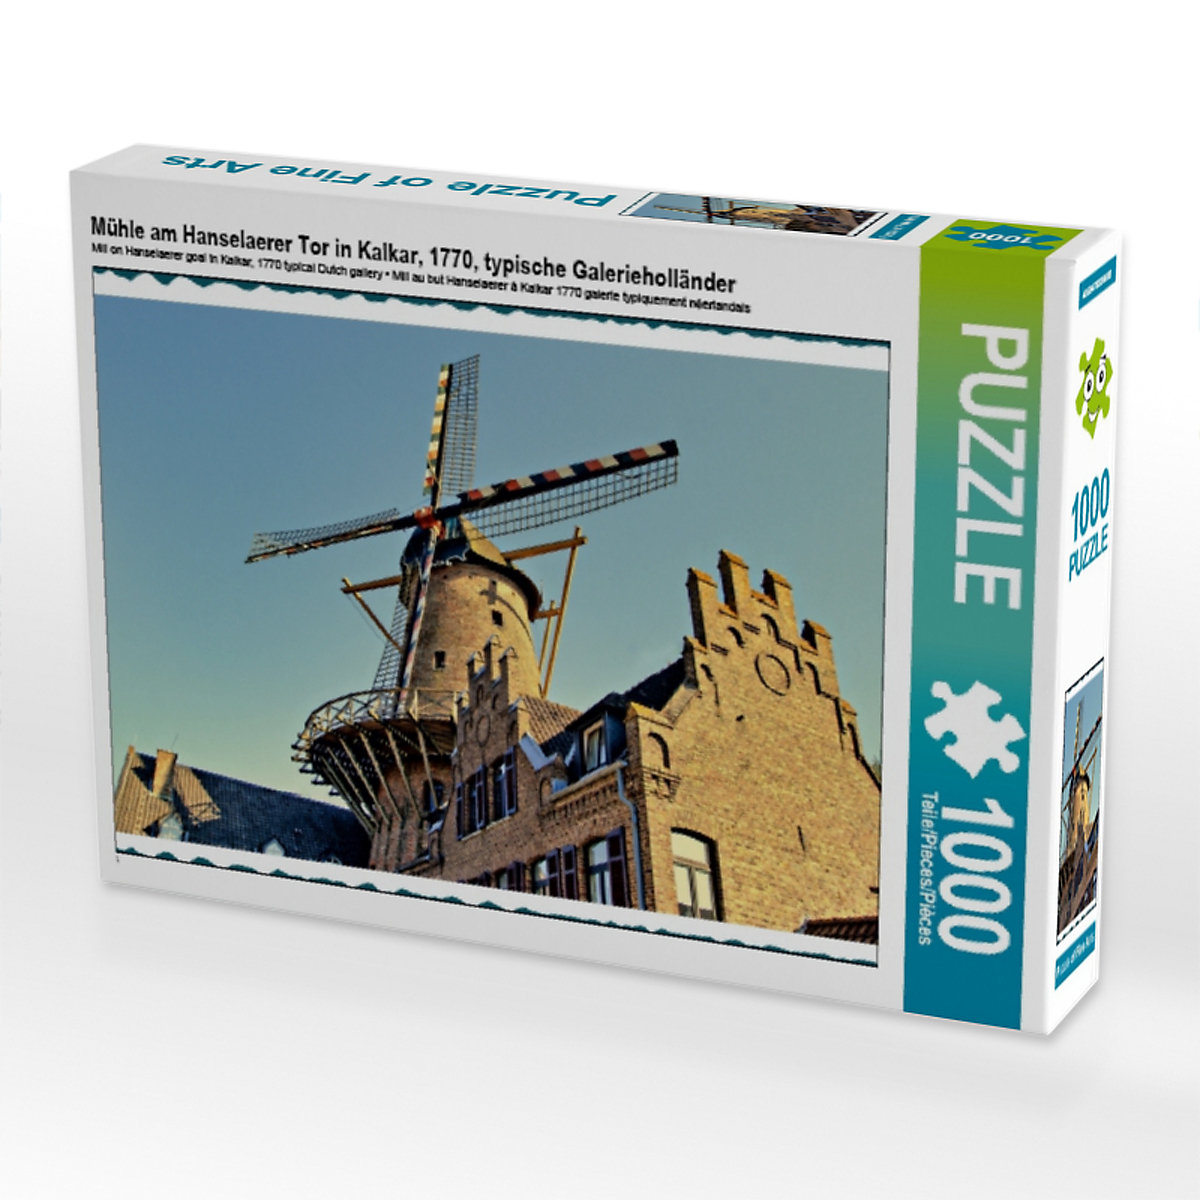 CALVENDO® Puzzle CALVENDO Puzzle Mühle am Hanselaerer Tor in Kalkar 1770 typische Galerieholländer 1000 Teile Foto-Puzzle für glückliche Stunden